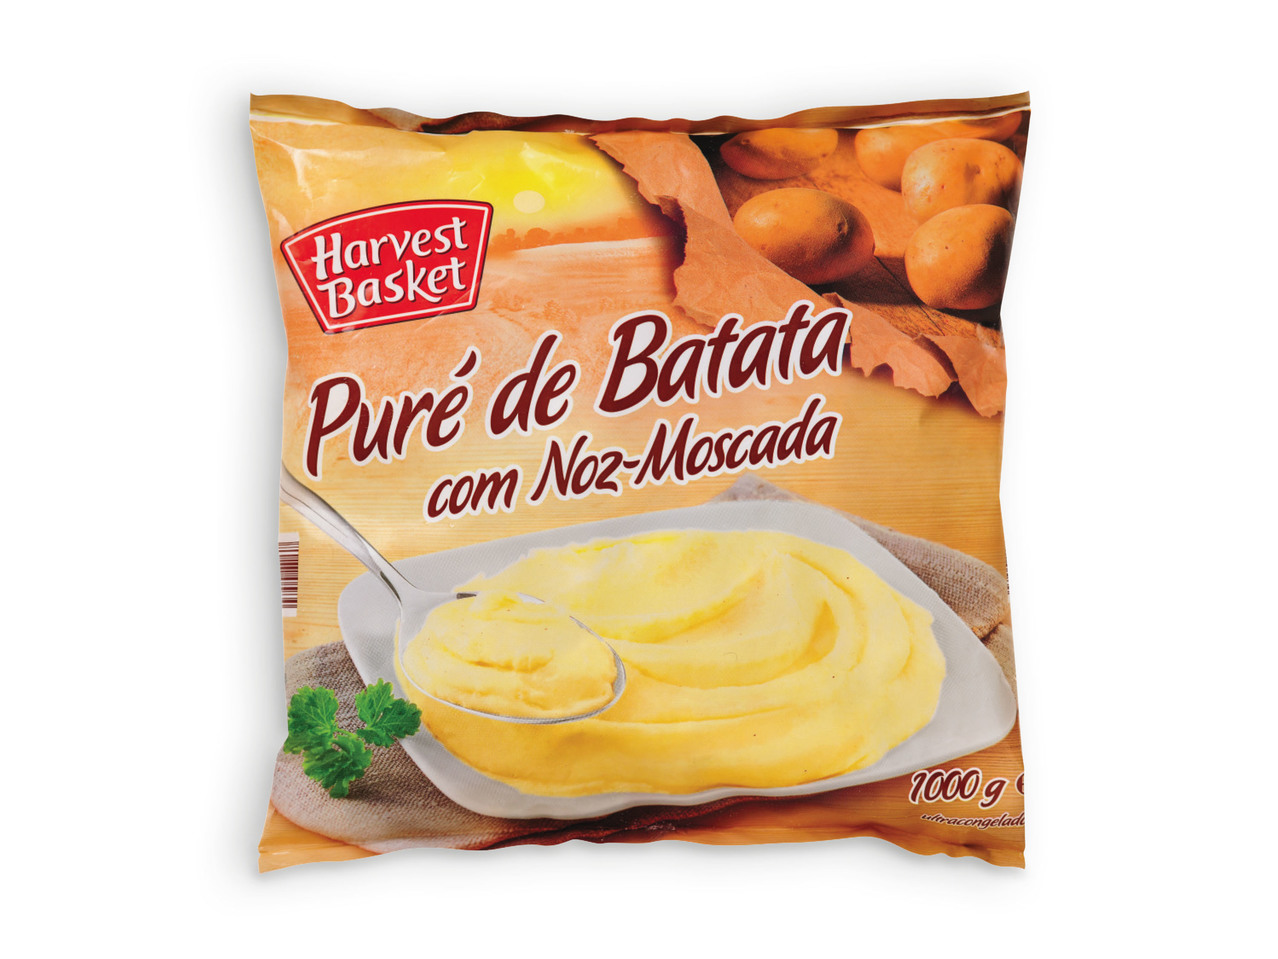 HARVEST BASKET(R) Puré de Batata com Noz Moscada